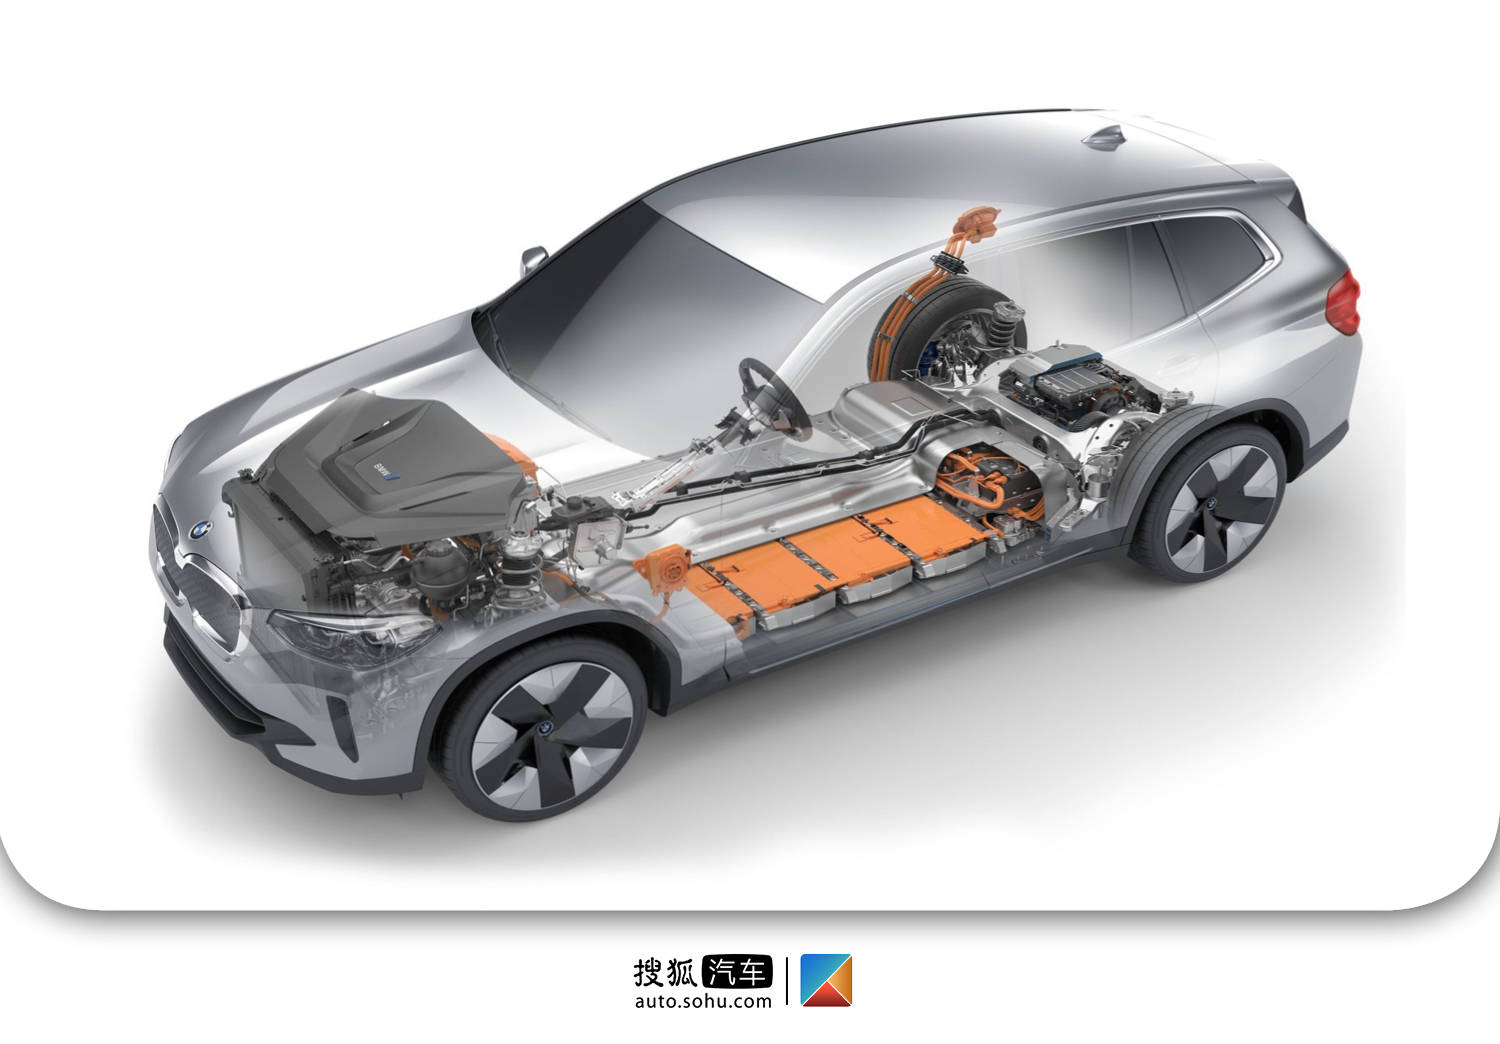 华晨宝马与宁德时代最直观的合作,当属去年上市的纯电动车型ix3,宁德